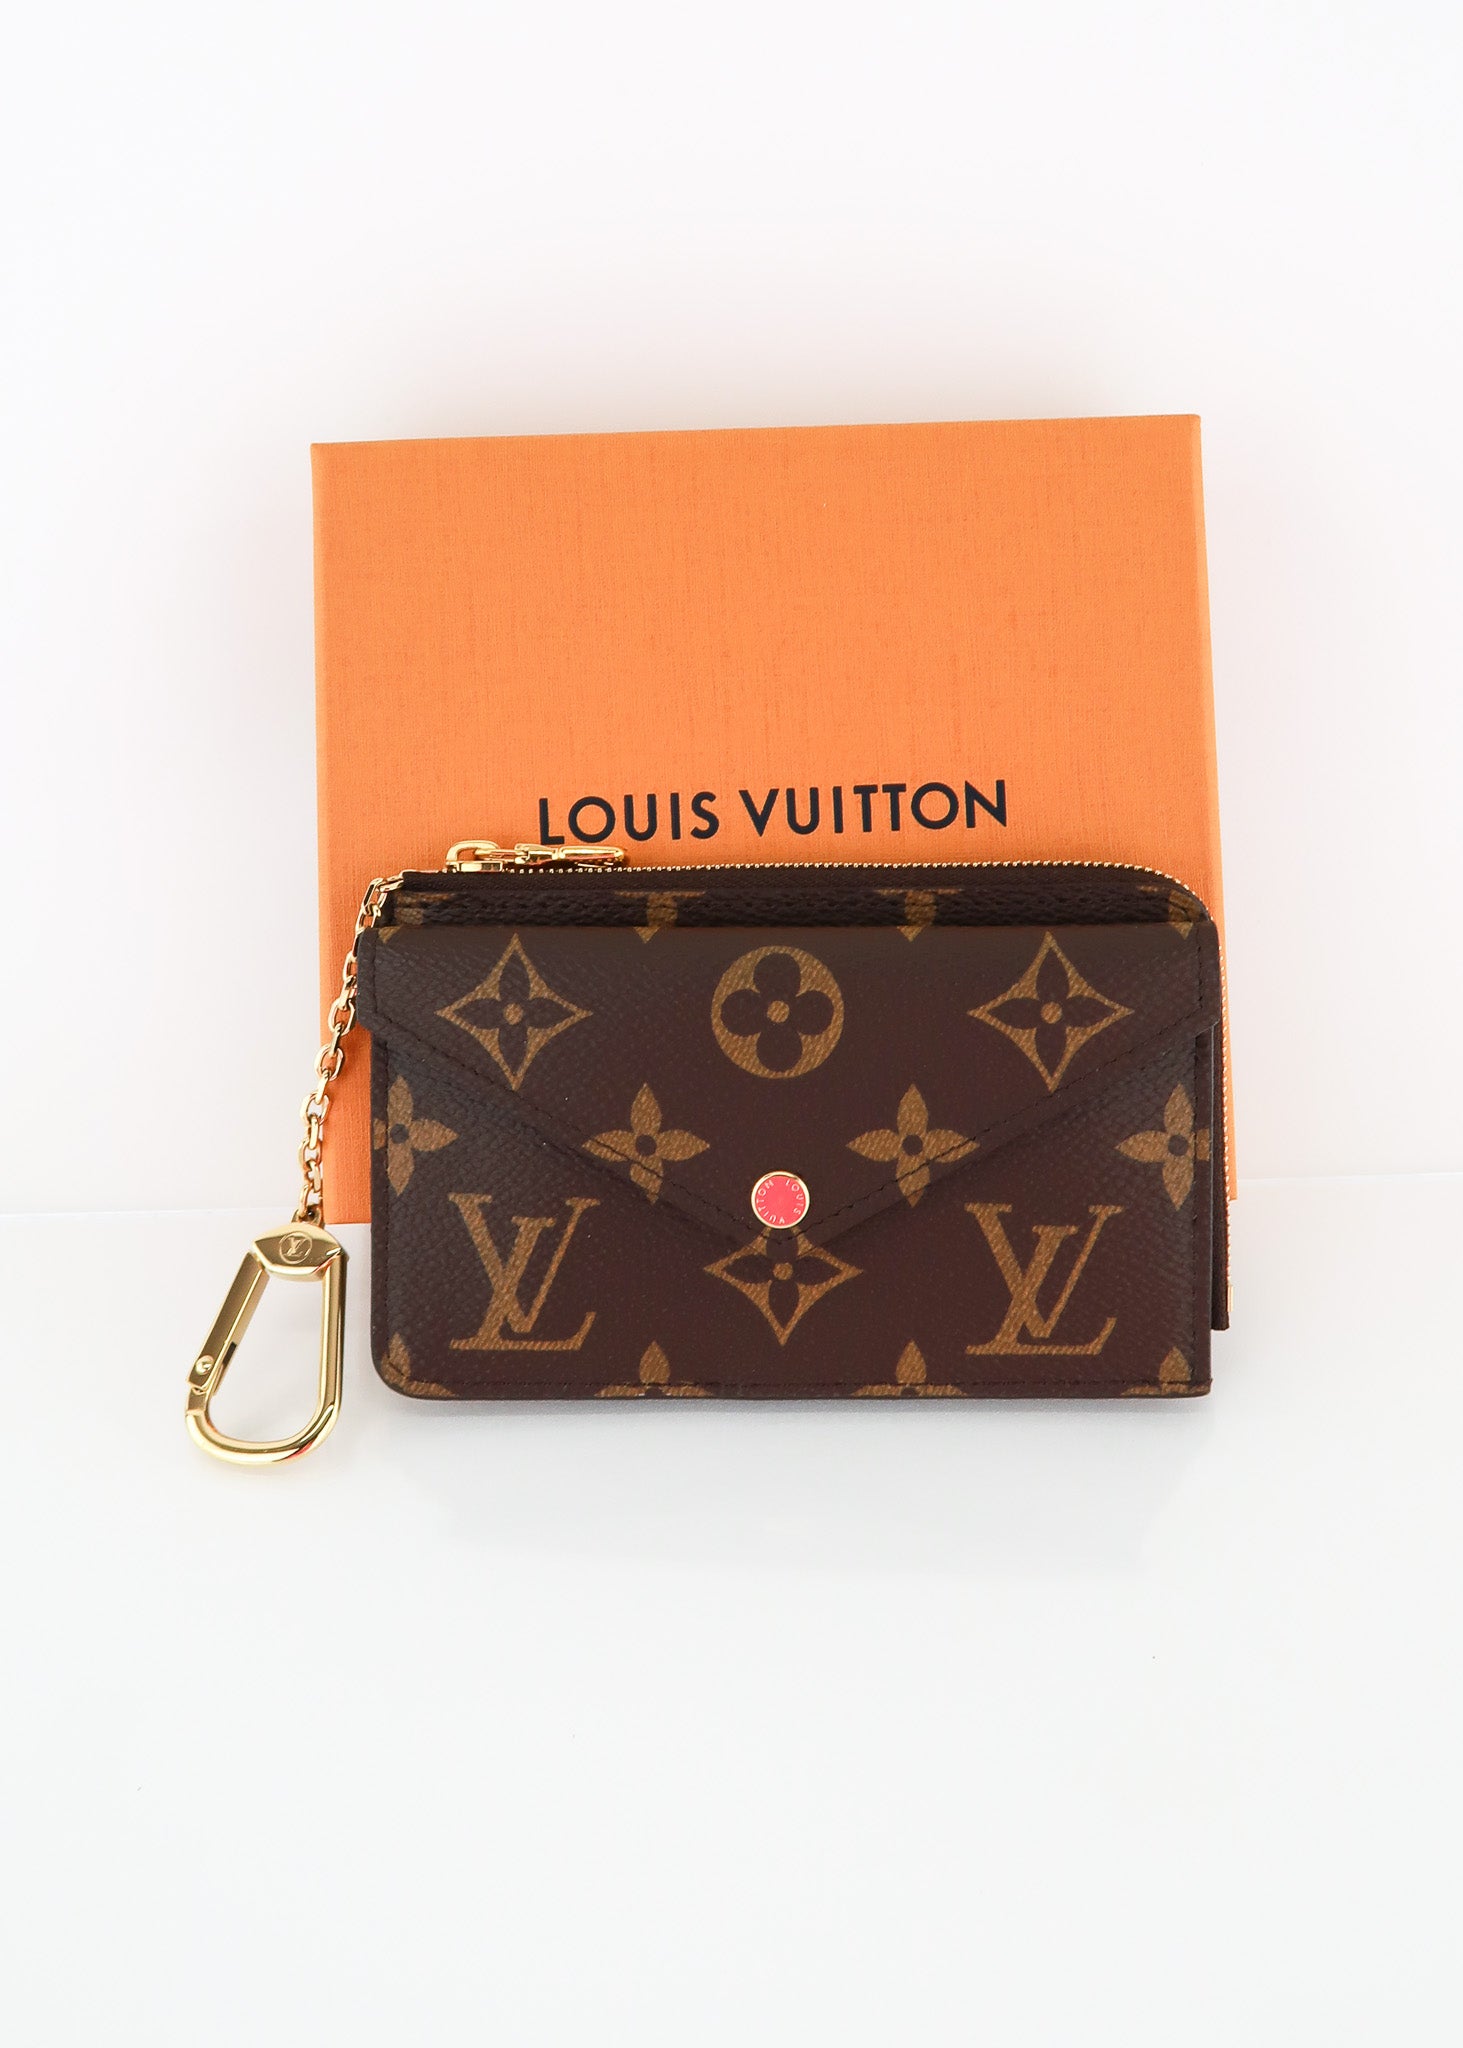 Preloved Louis Vuitton Monogram Recto Verso Wallet 8GMM64R 030623